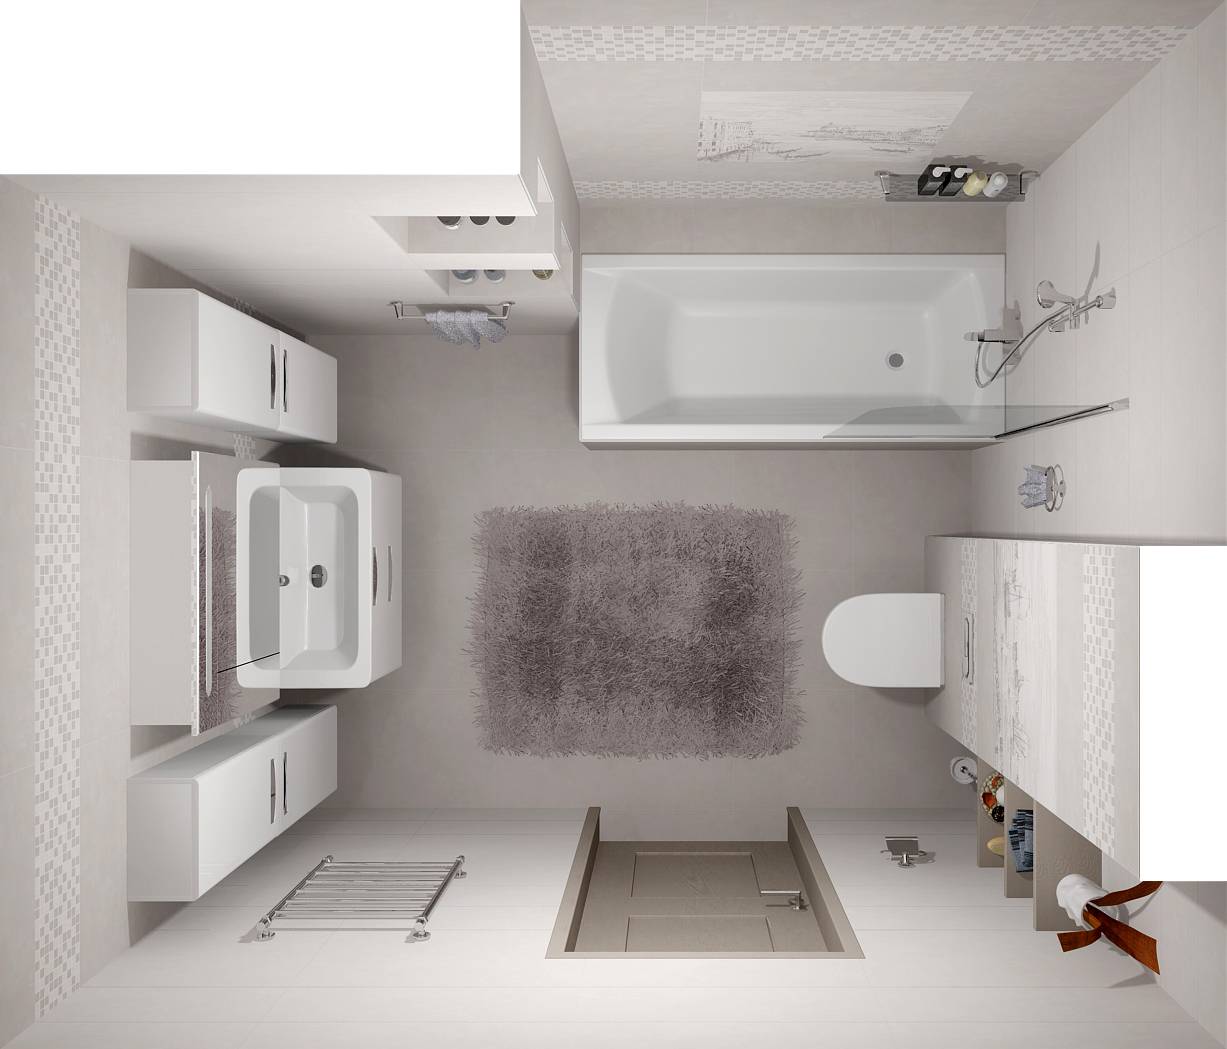 Варианты планировки ванной комнаты, площадью 3 кв м Проекты расположения мебели и особенности дизайна интерьера